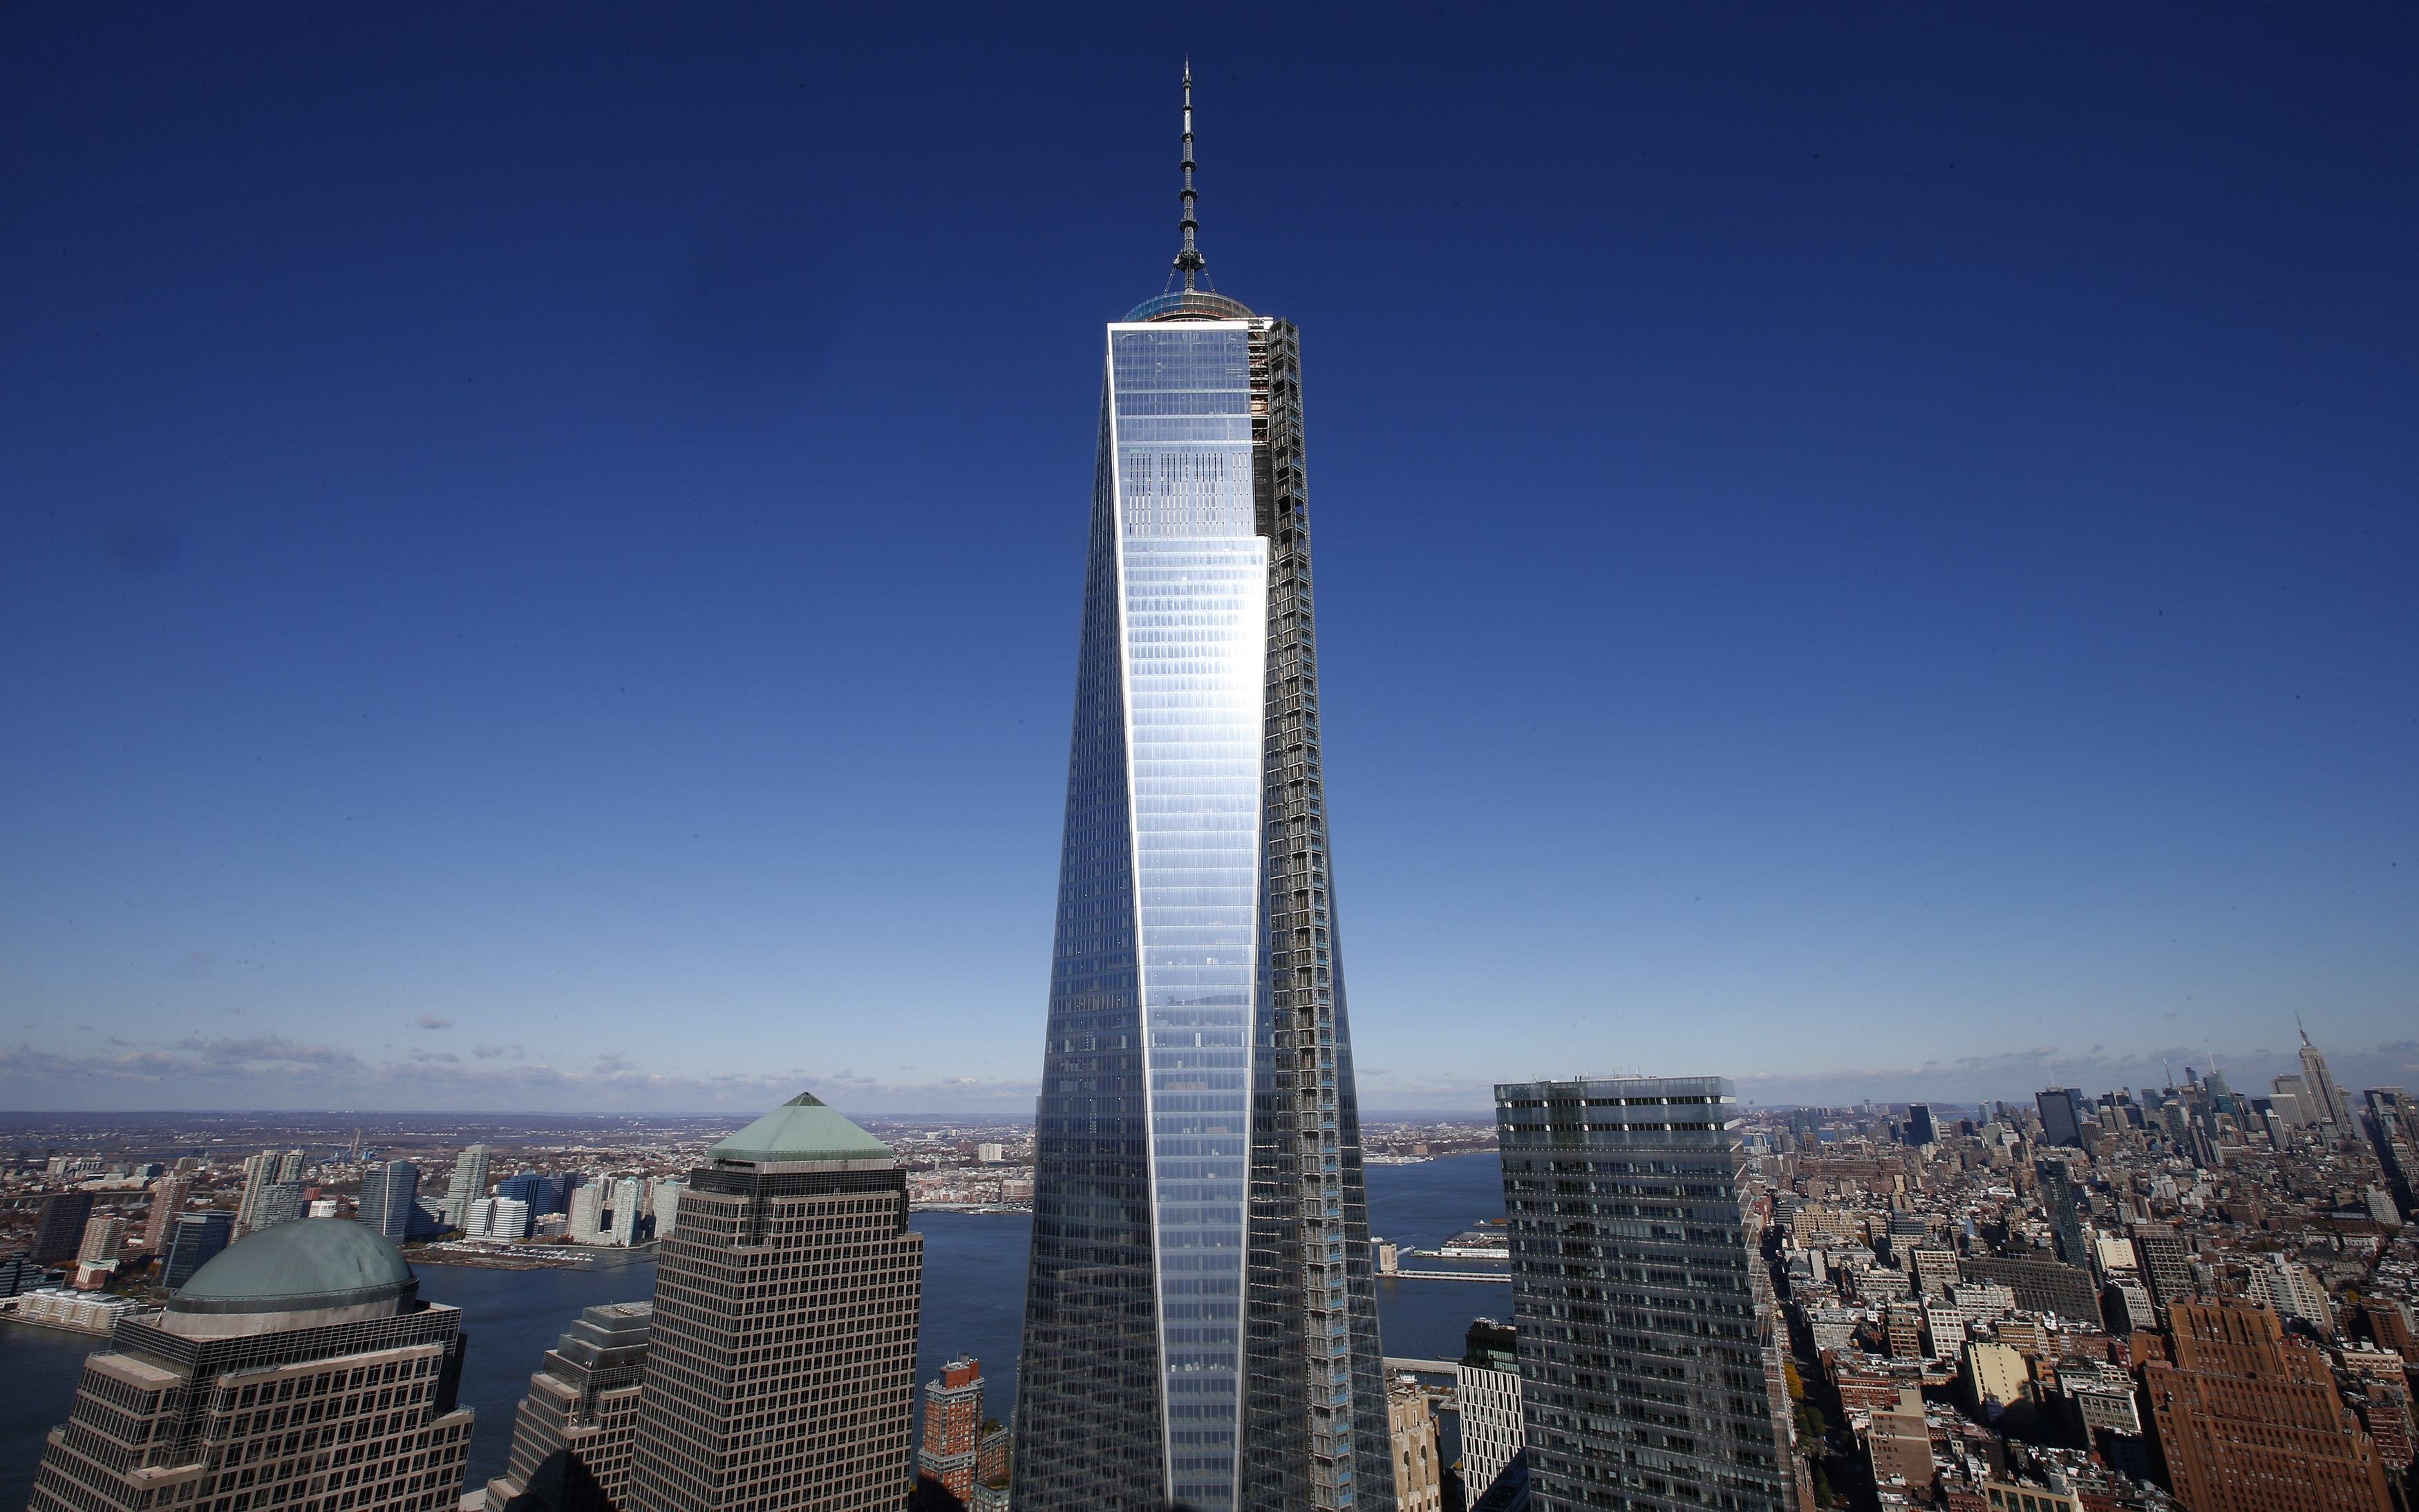 Самый высокий дом на земле. Башня свободы в Нью-Йорке. Башни ВТЦ В Нью-Йорке. Всемирный торговый центр 1 Нью-Йорк. Всемирный торговый центр башня свободы.